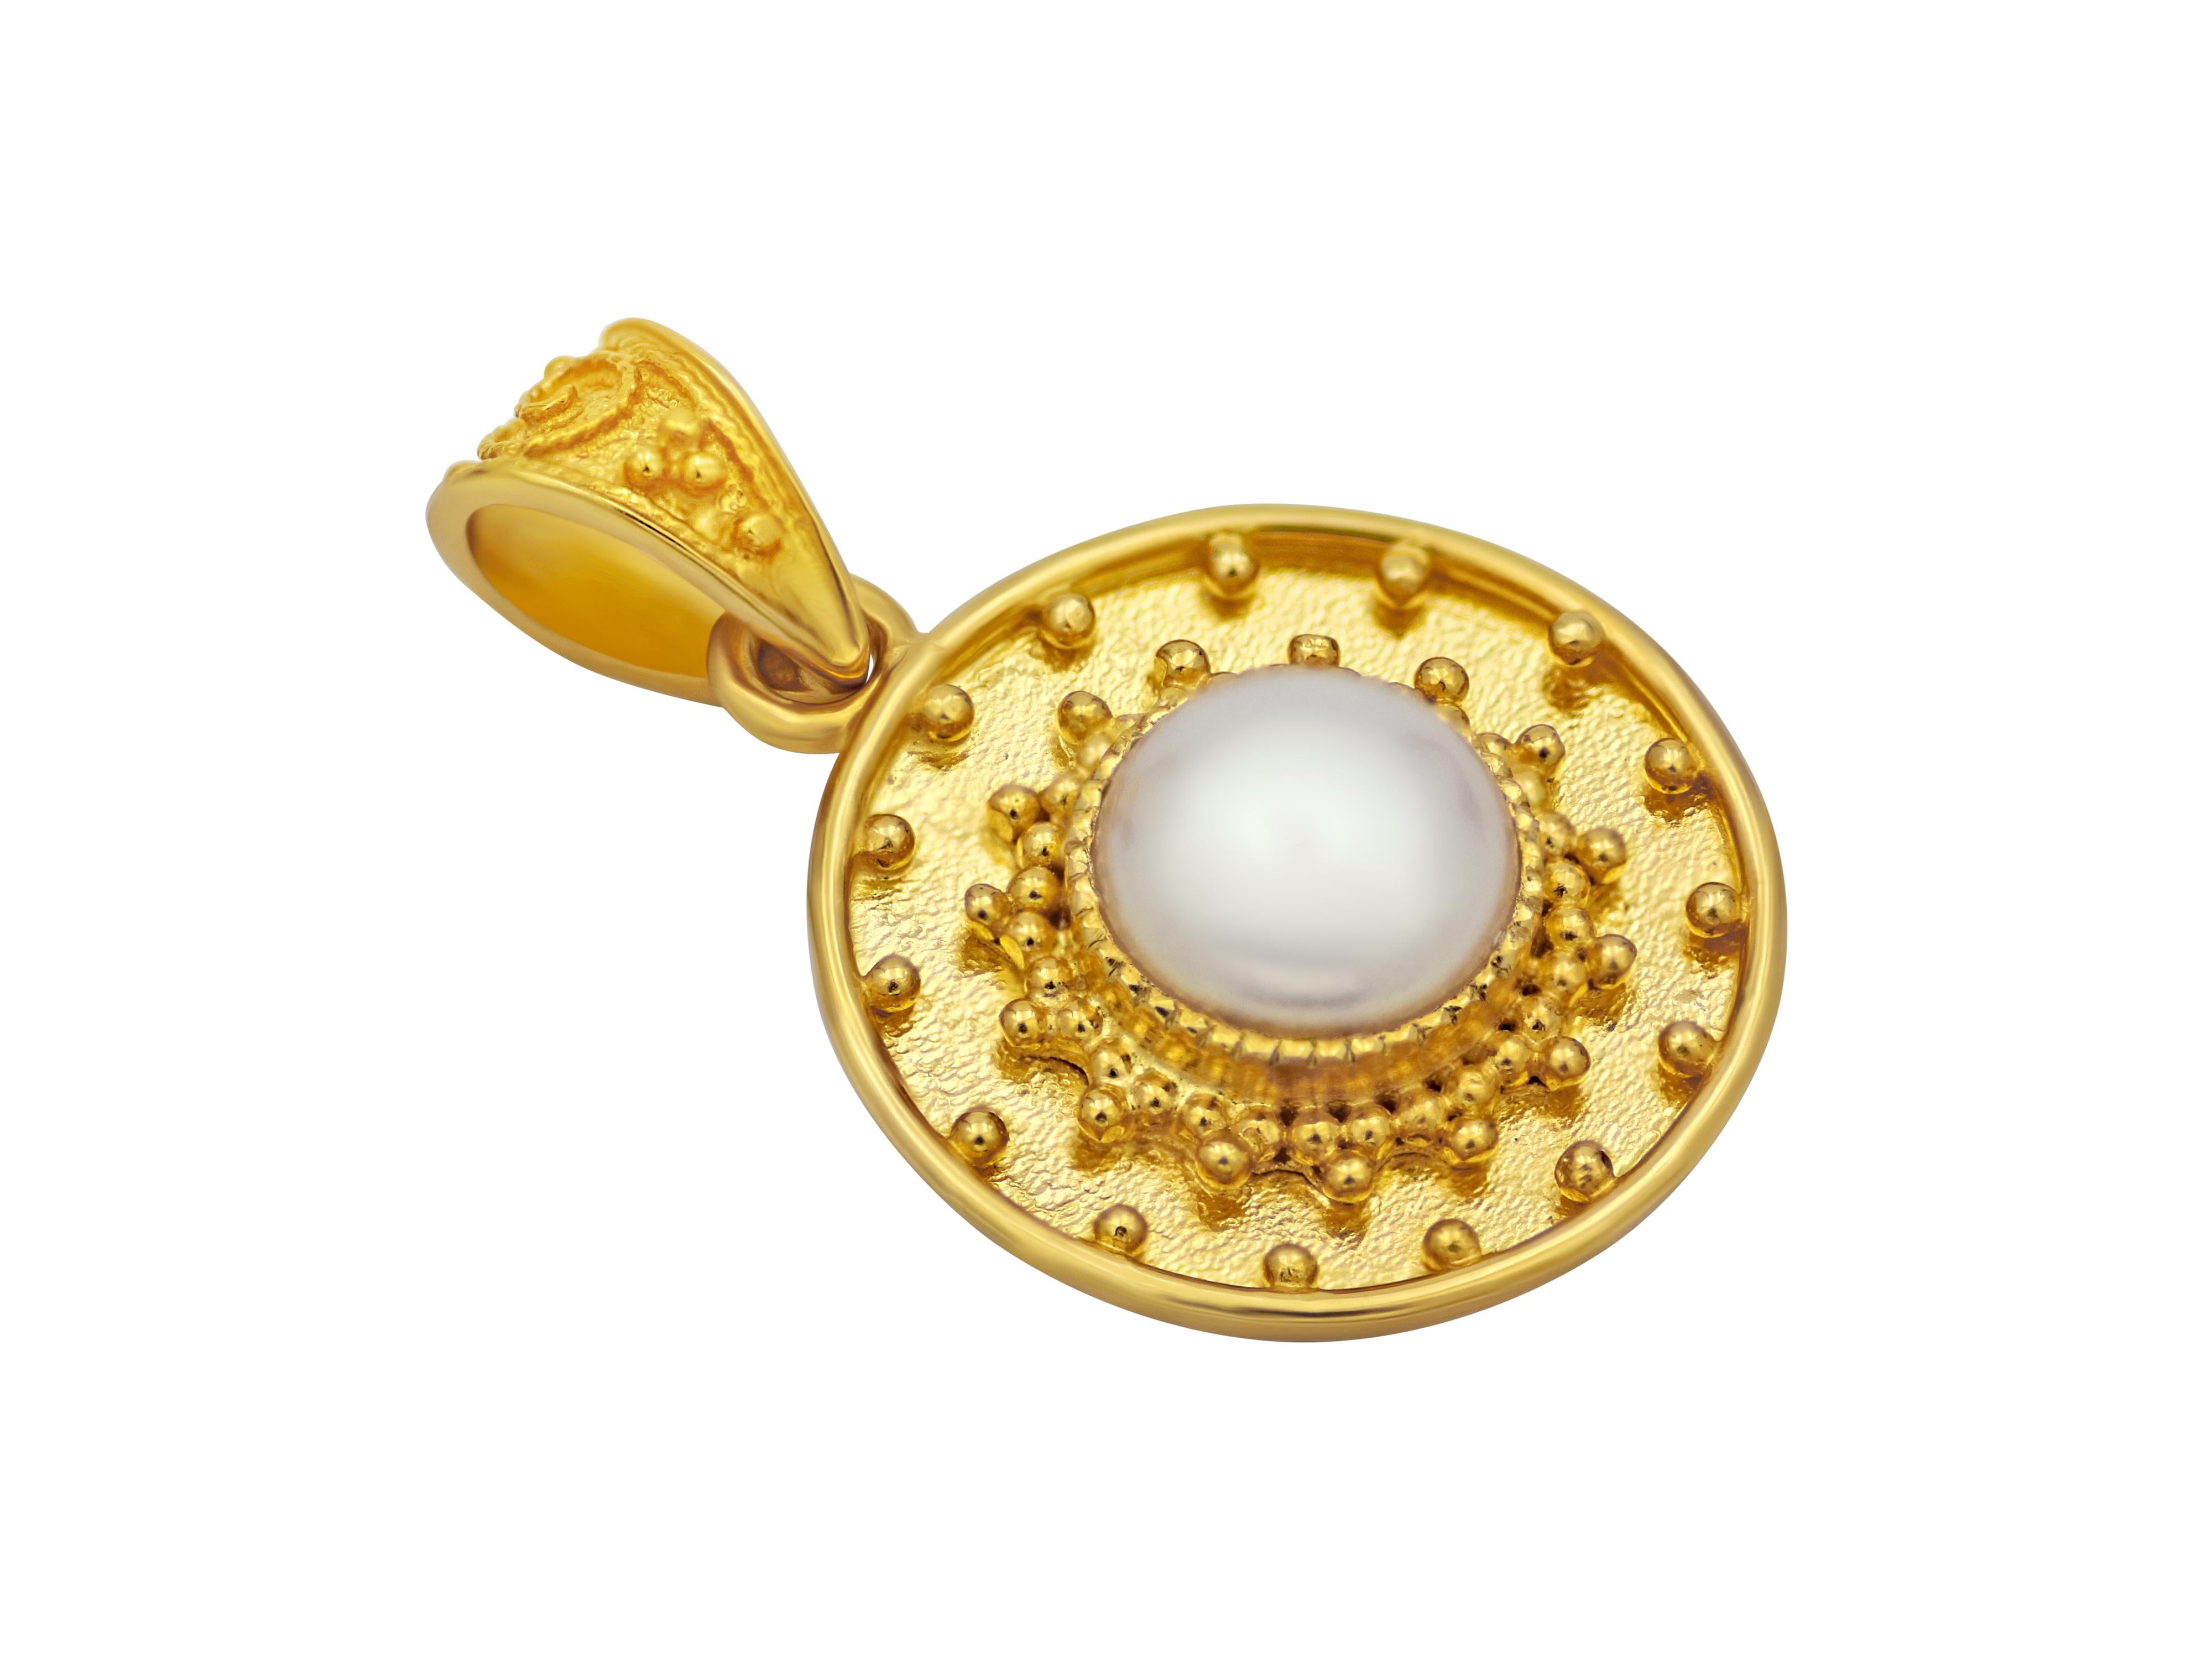 anhänger aus 18 Karat Gelbgold, komplett handgefertigt, umrahmt eine natürliche Perle mit granuliertem Kunstwerk. Eine ideale Größe, um Ihre Lagenanhänger zu vervollständigen.